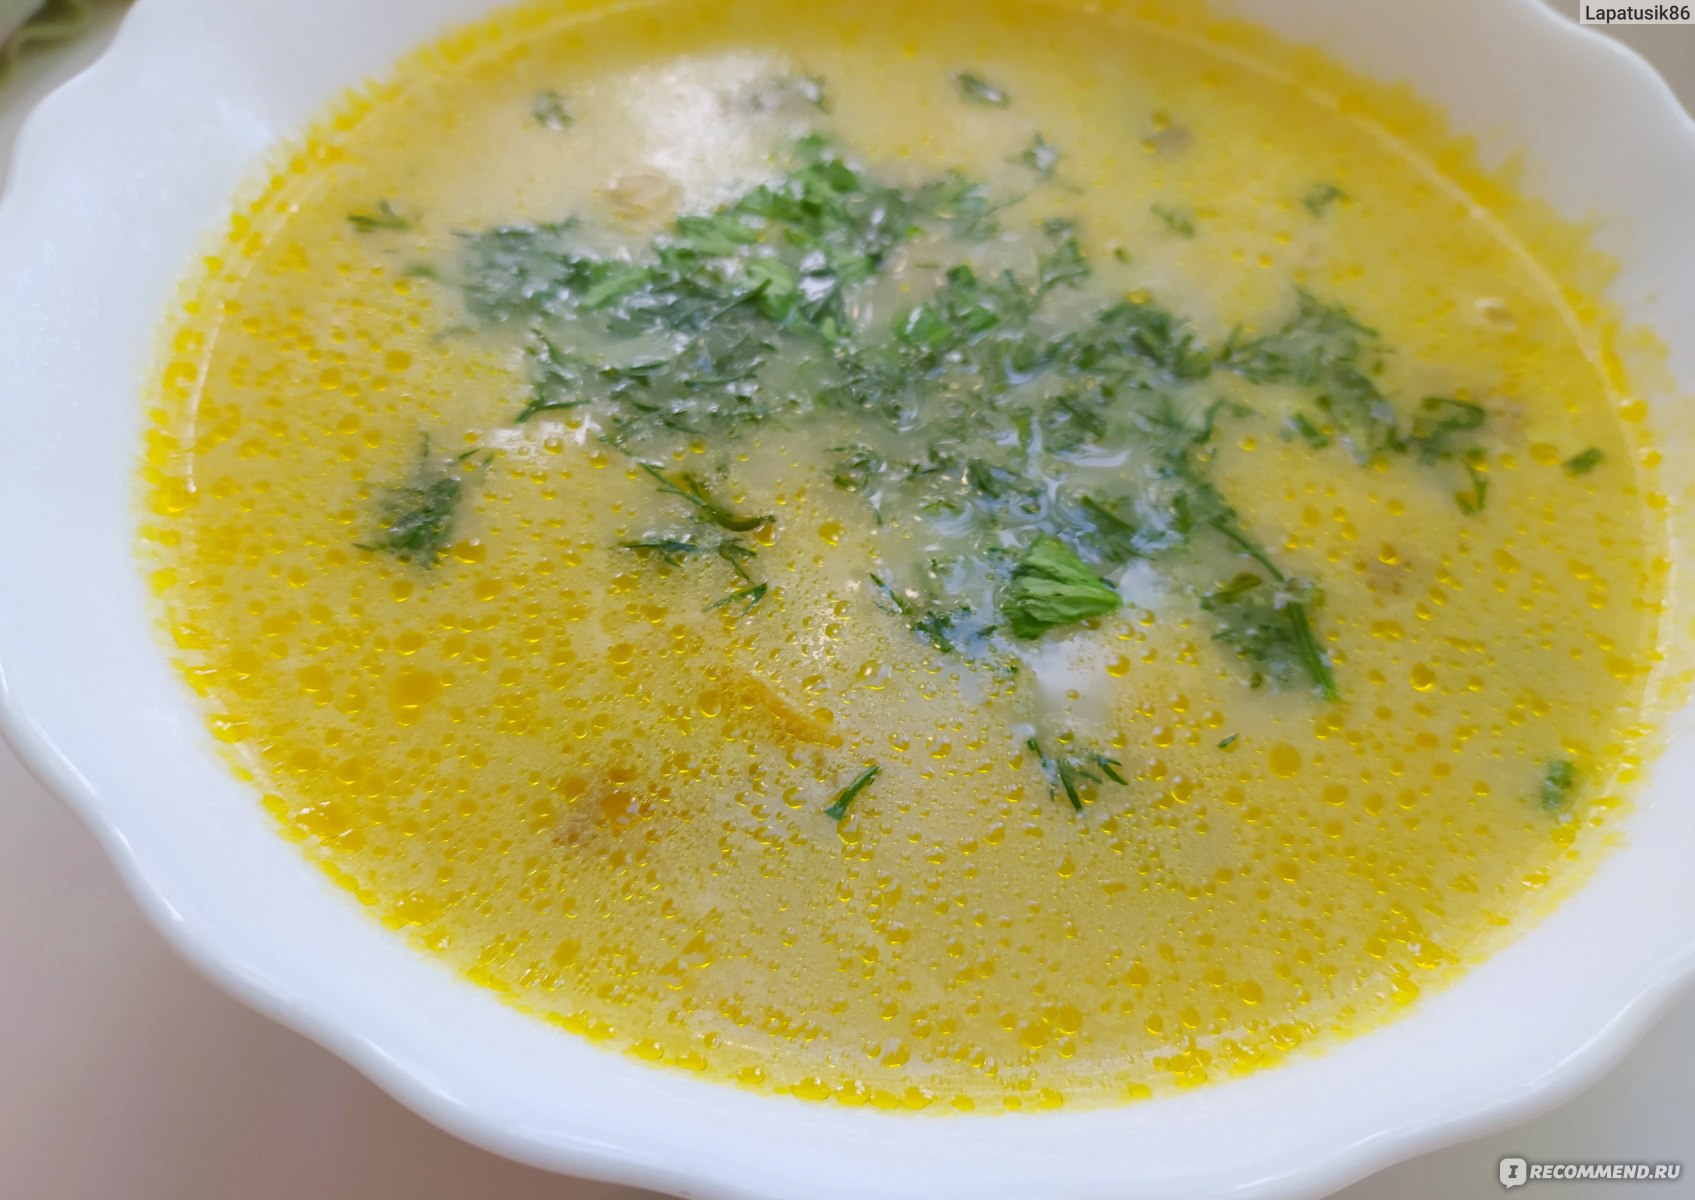 Сырный суп с грибами и плавленным сыром Хохланд